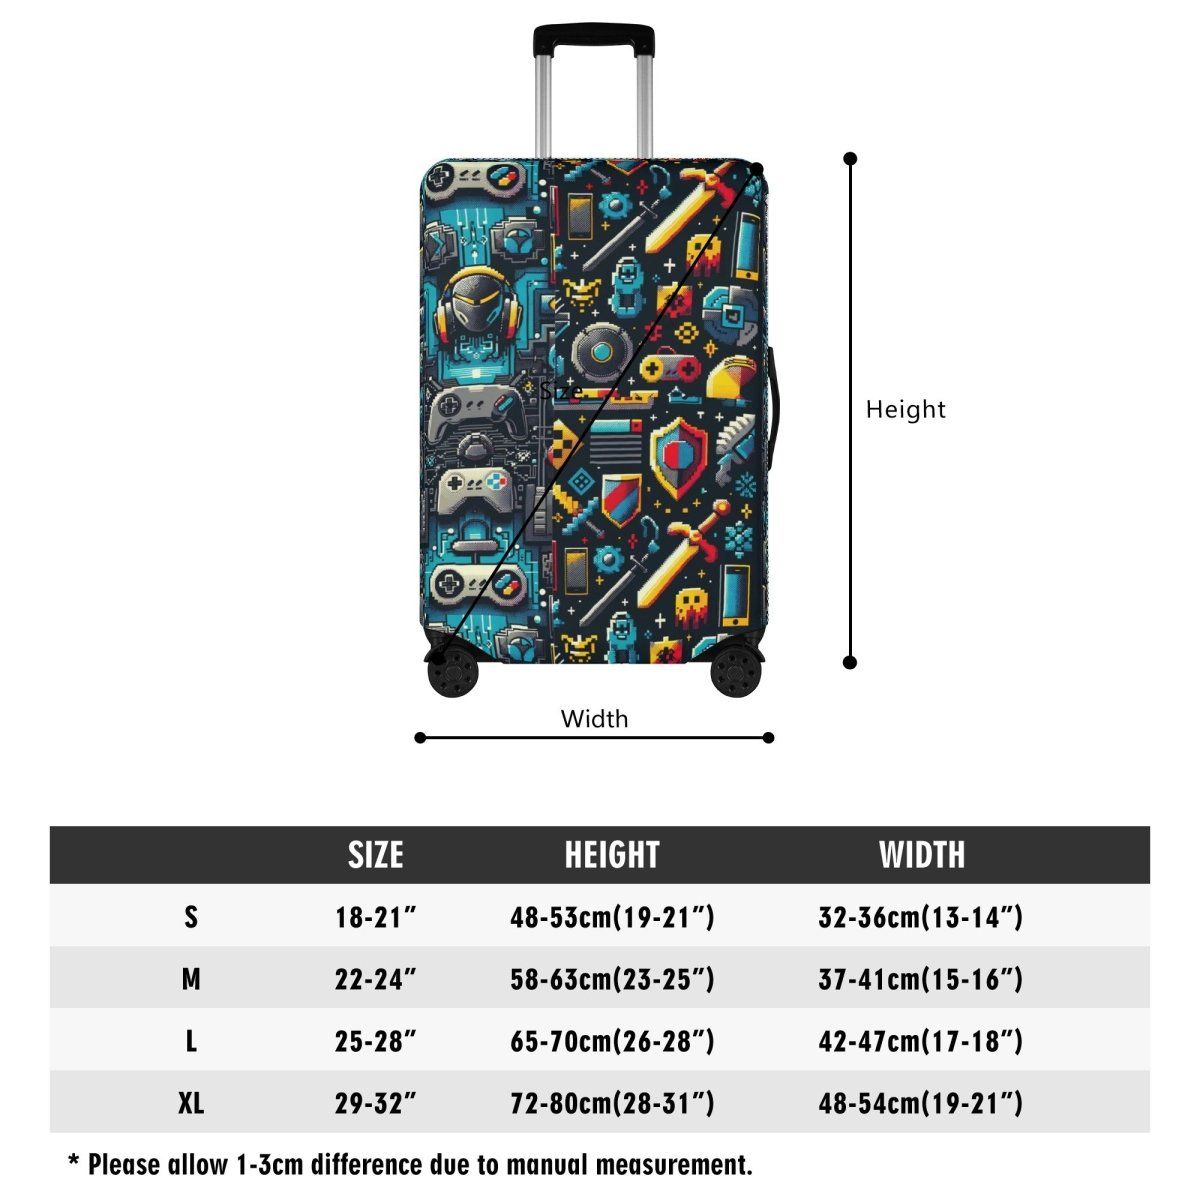 Retro Gaming Luggage Cover - Fun Nostalgia Design for Hassle-Free Travel - Iron Phoenix GHG